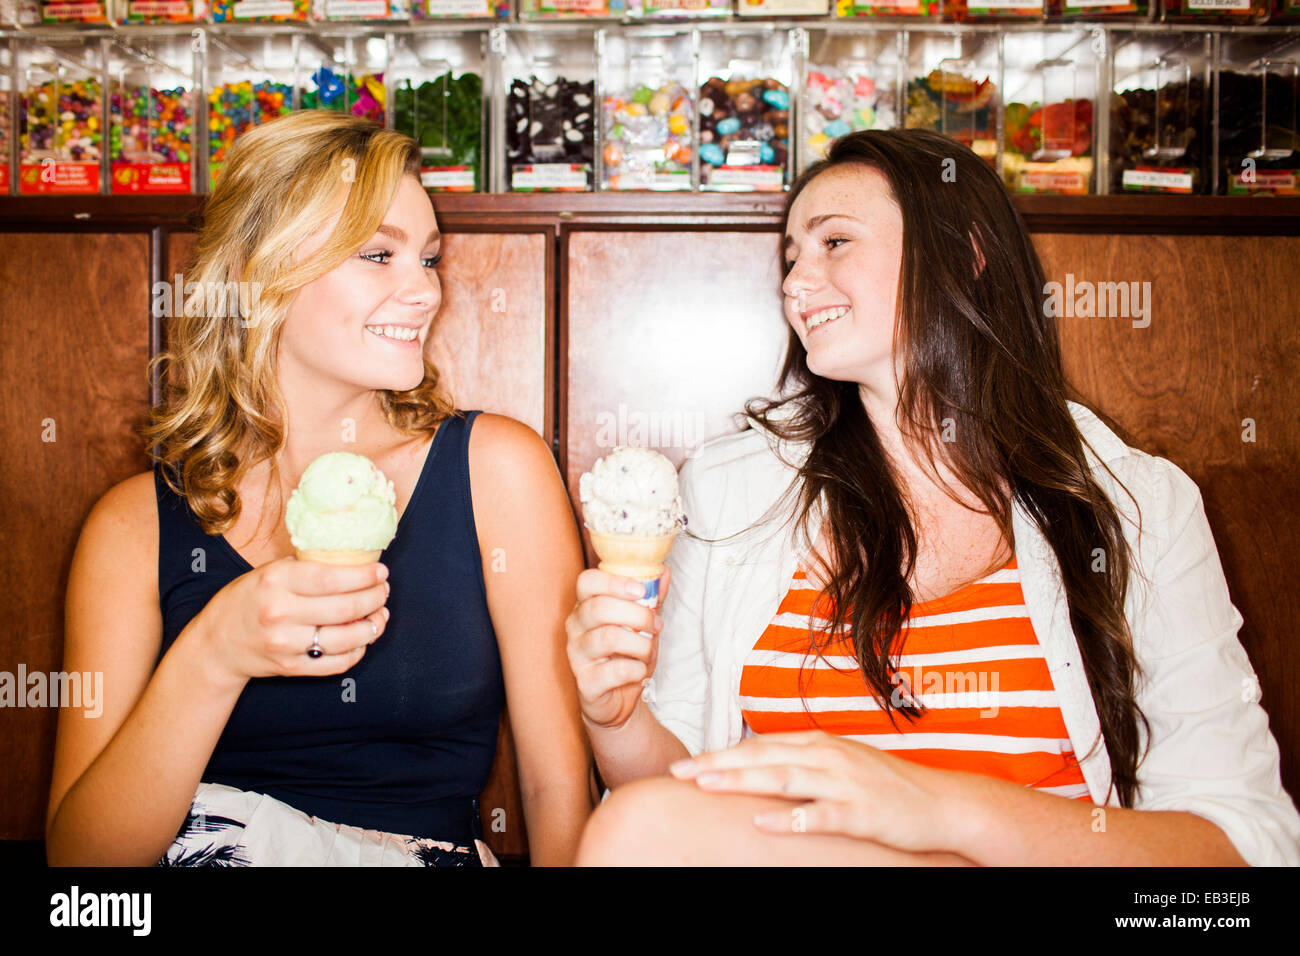 Chicas adolescentes caucásicos comiendo conos de helado Fotografía de stock  - Alamy